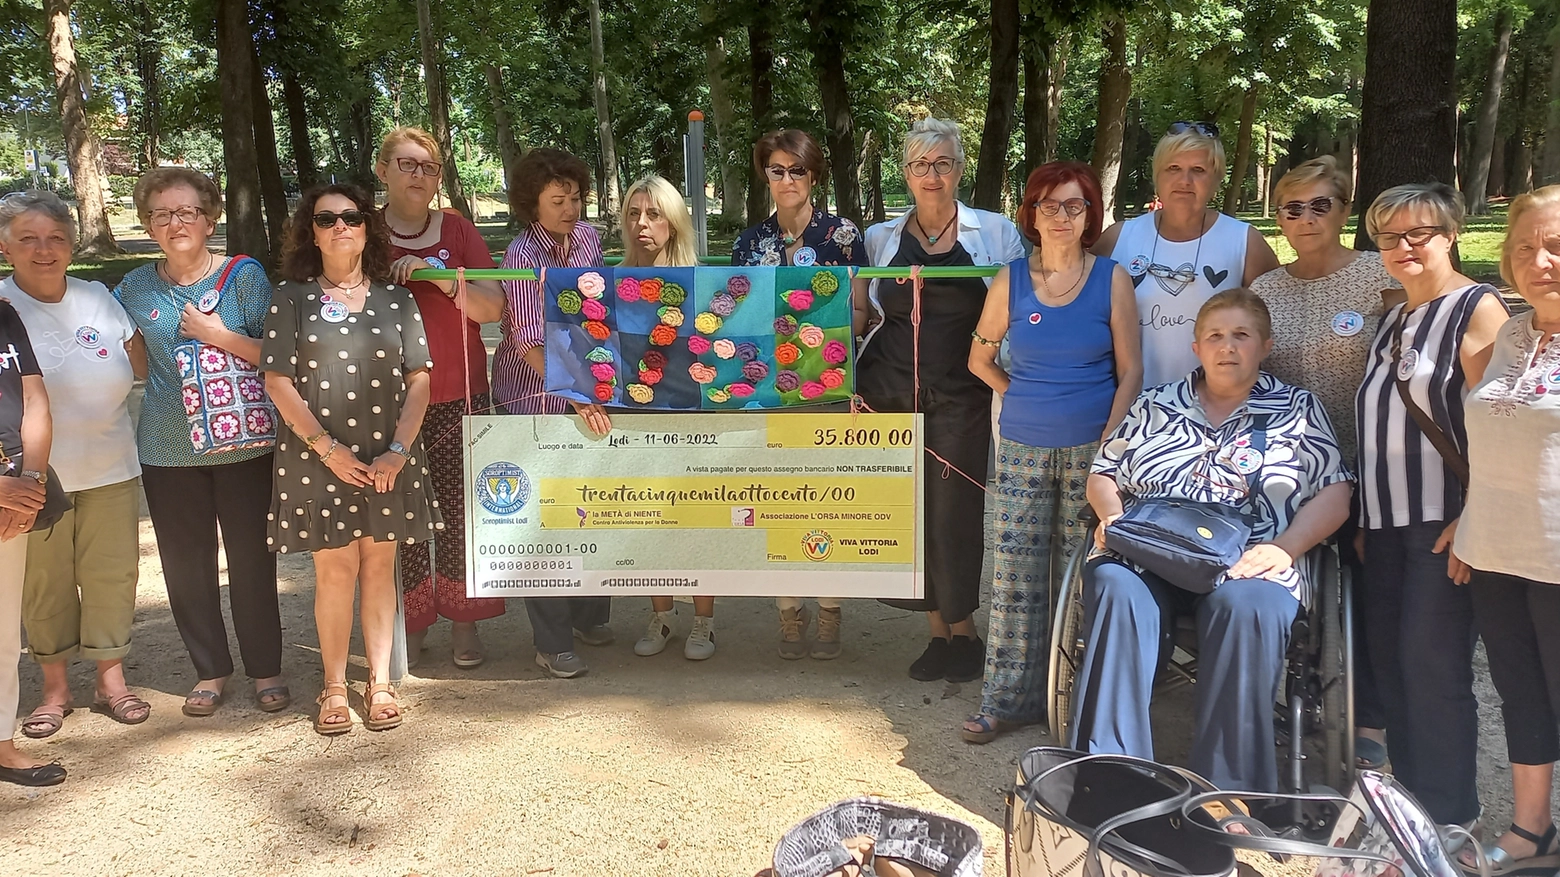 Il gruppo di Viva Vittoria Lodi consegna i 35.800 euro raccolti al Centro Antiviolenza